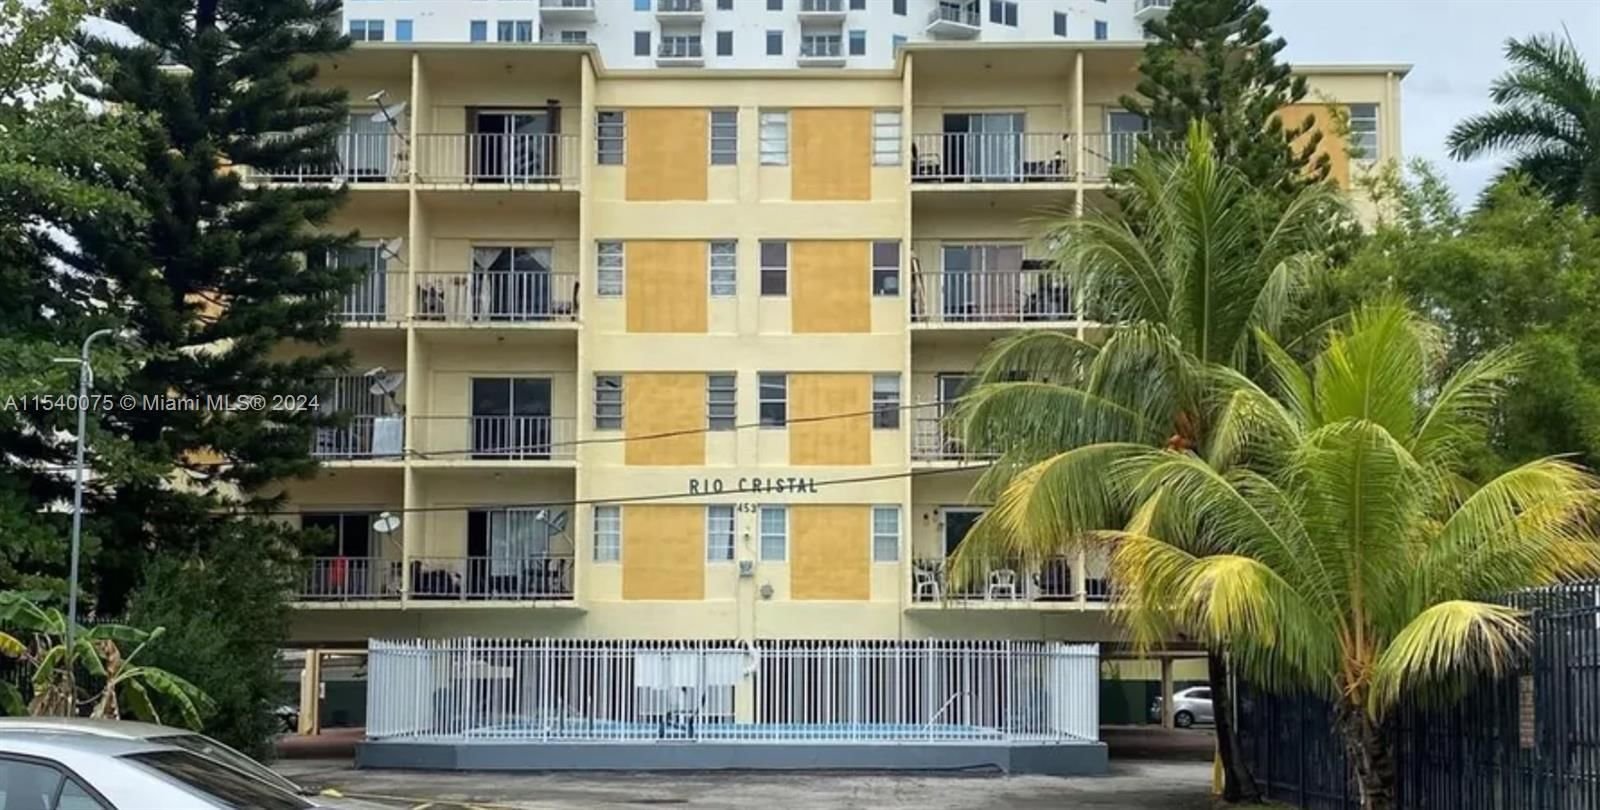 Real estate property located at 453 2nd St #304C, Miami-Dade County, RIO CRISTAL CONDO, Miami, FL